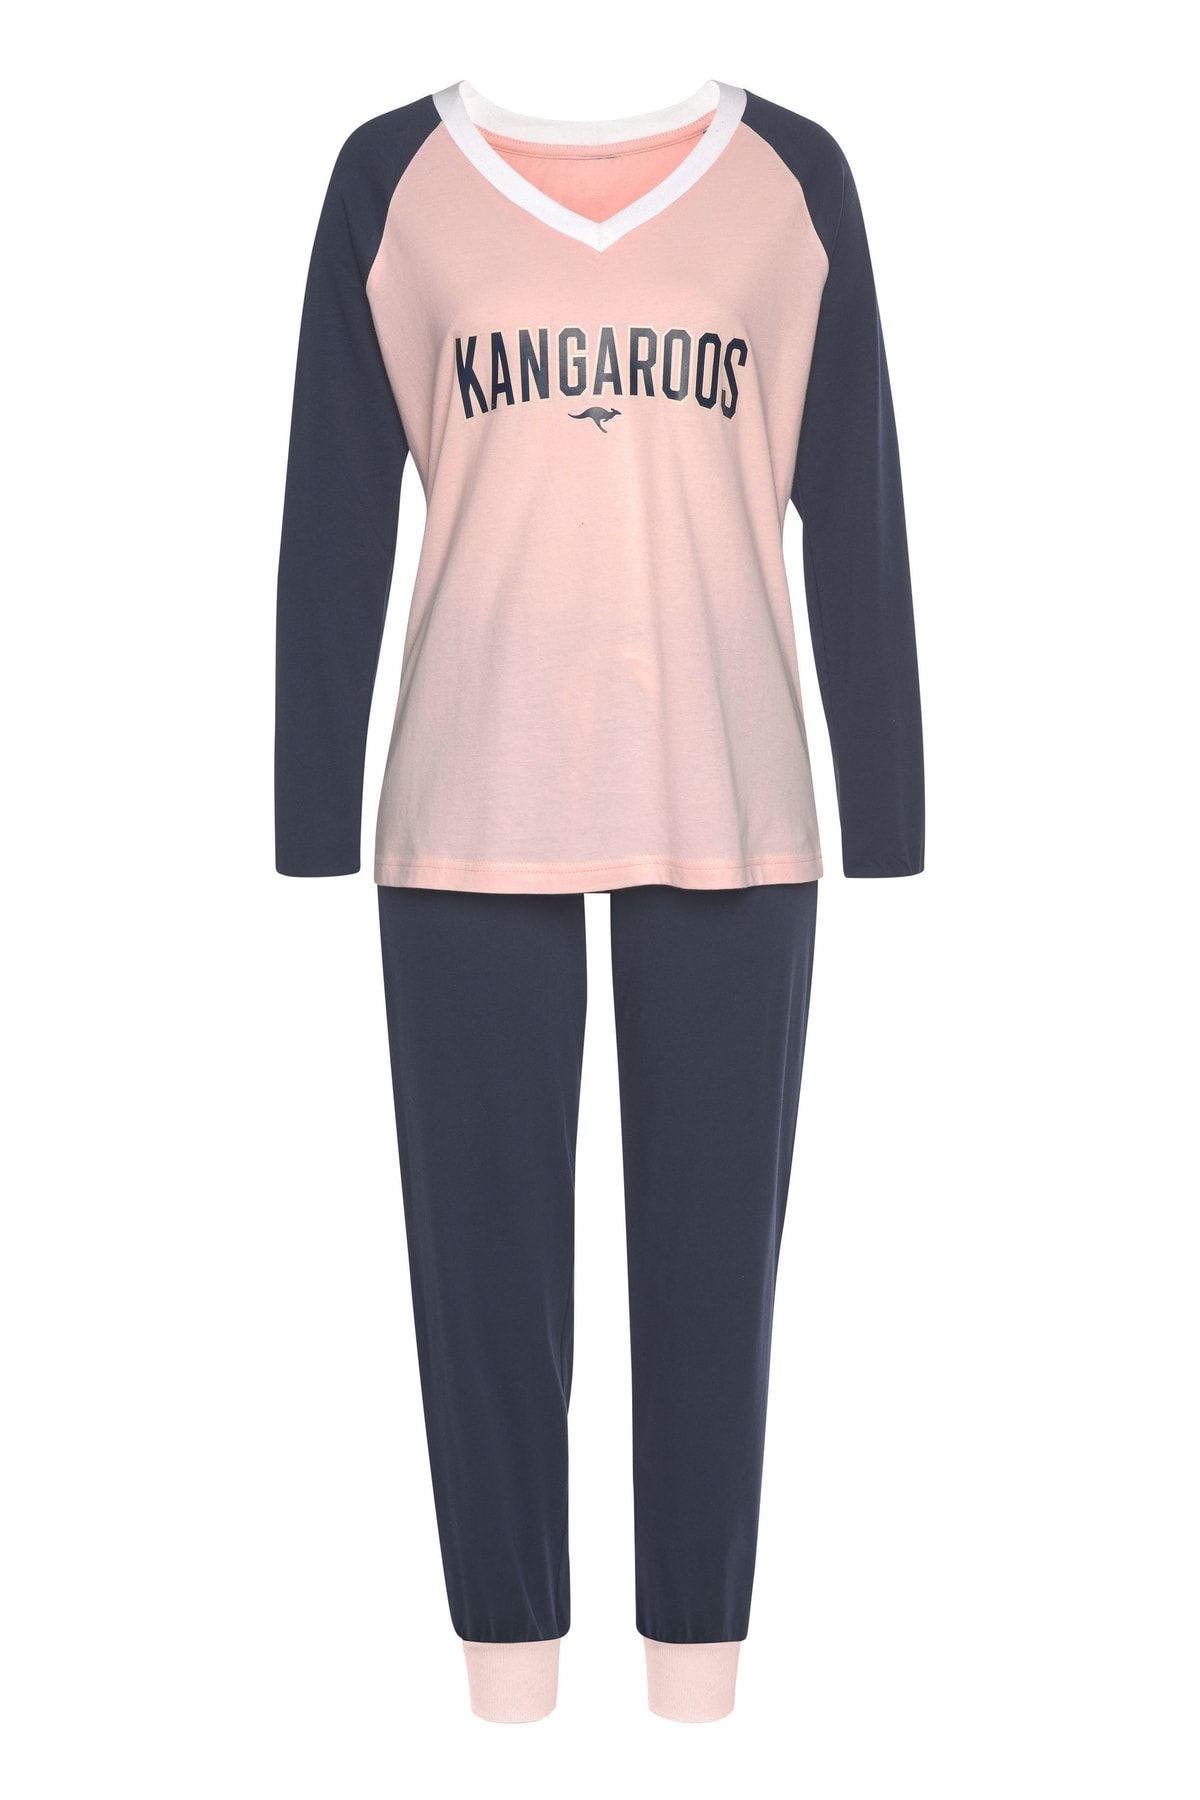 Kangaroos Pajama Set - Pink - Plain - Trendyol